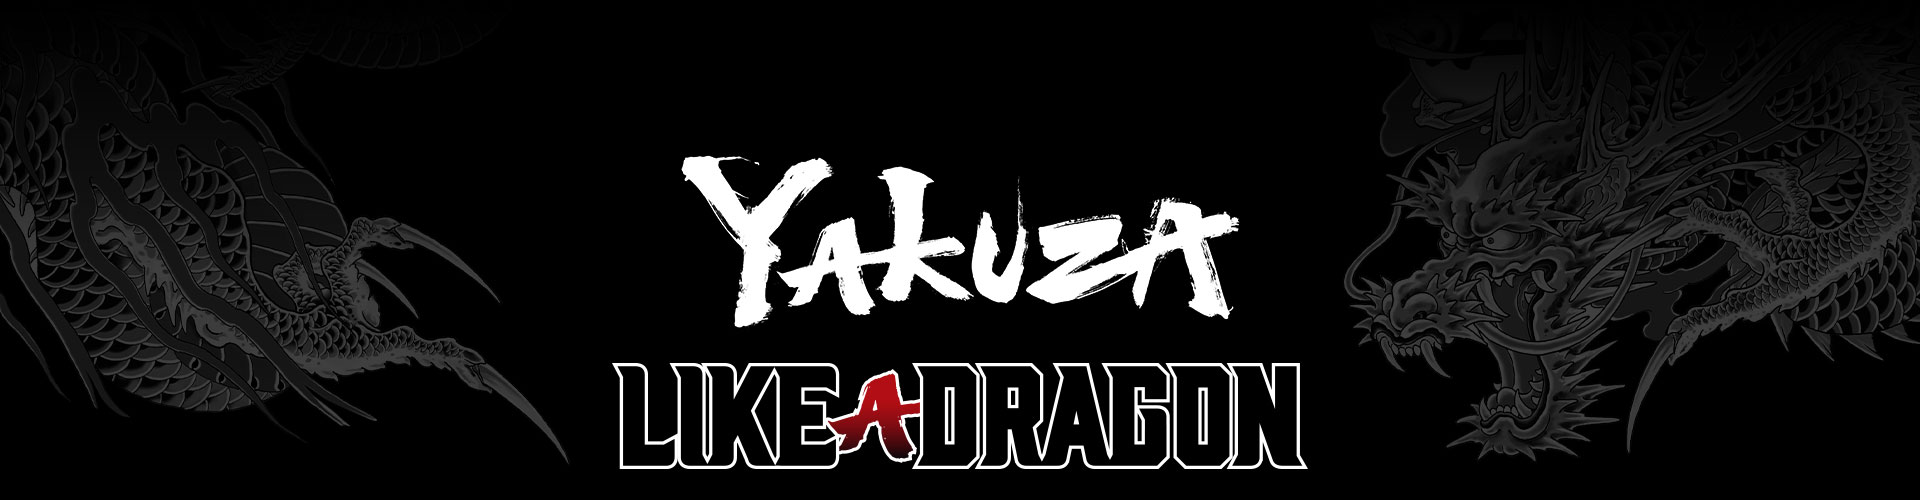 Yakuza Like a Dragon -pelisarjan logo tyylitellyllä harmaalla lohikäärmetatuointitaustalla.